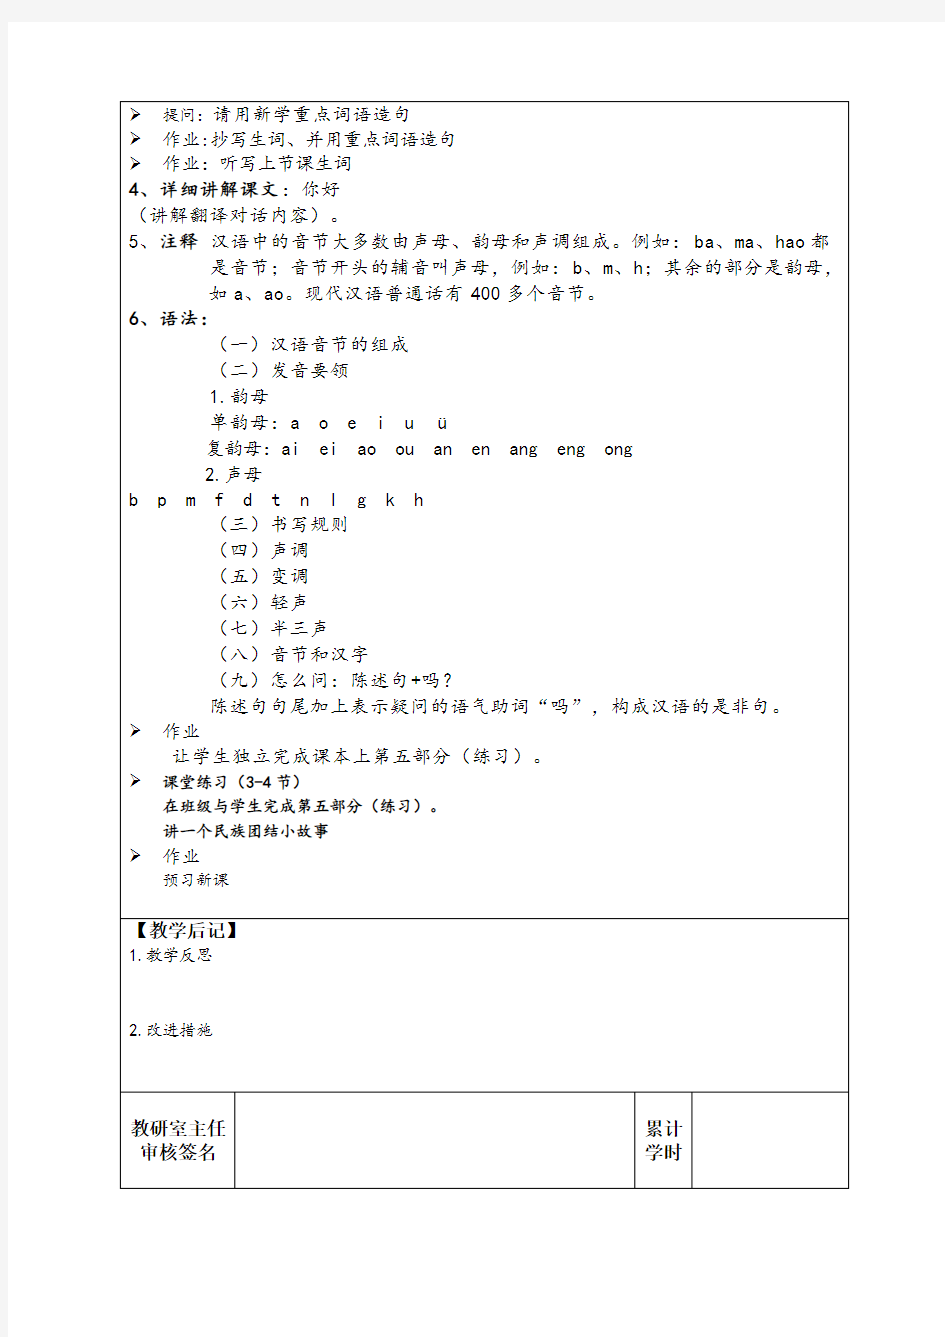 初级汉语教程第一册教案1-20课2017版